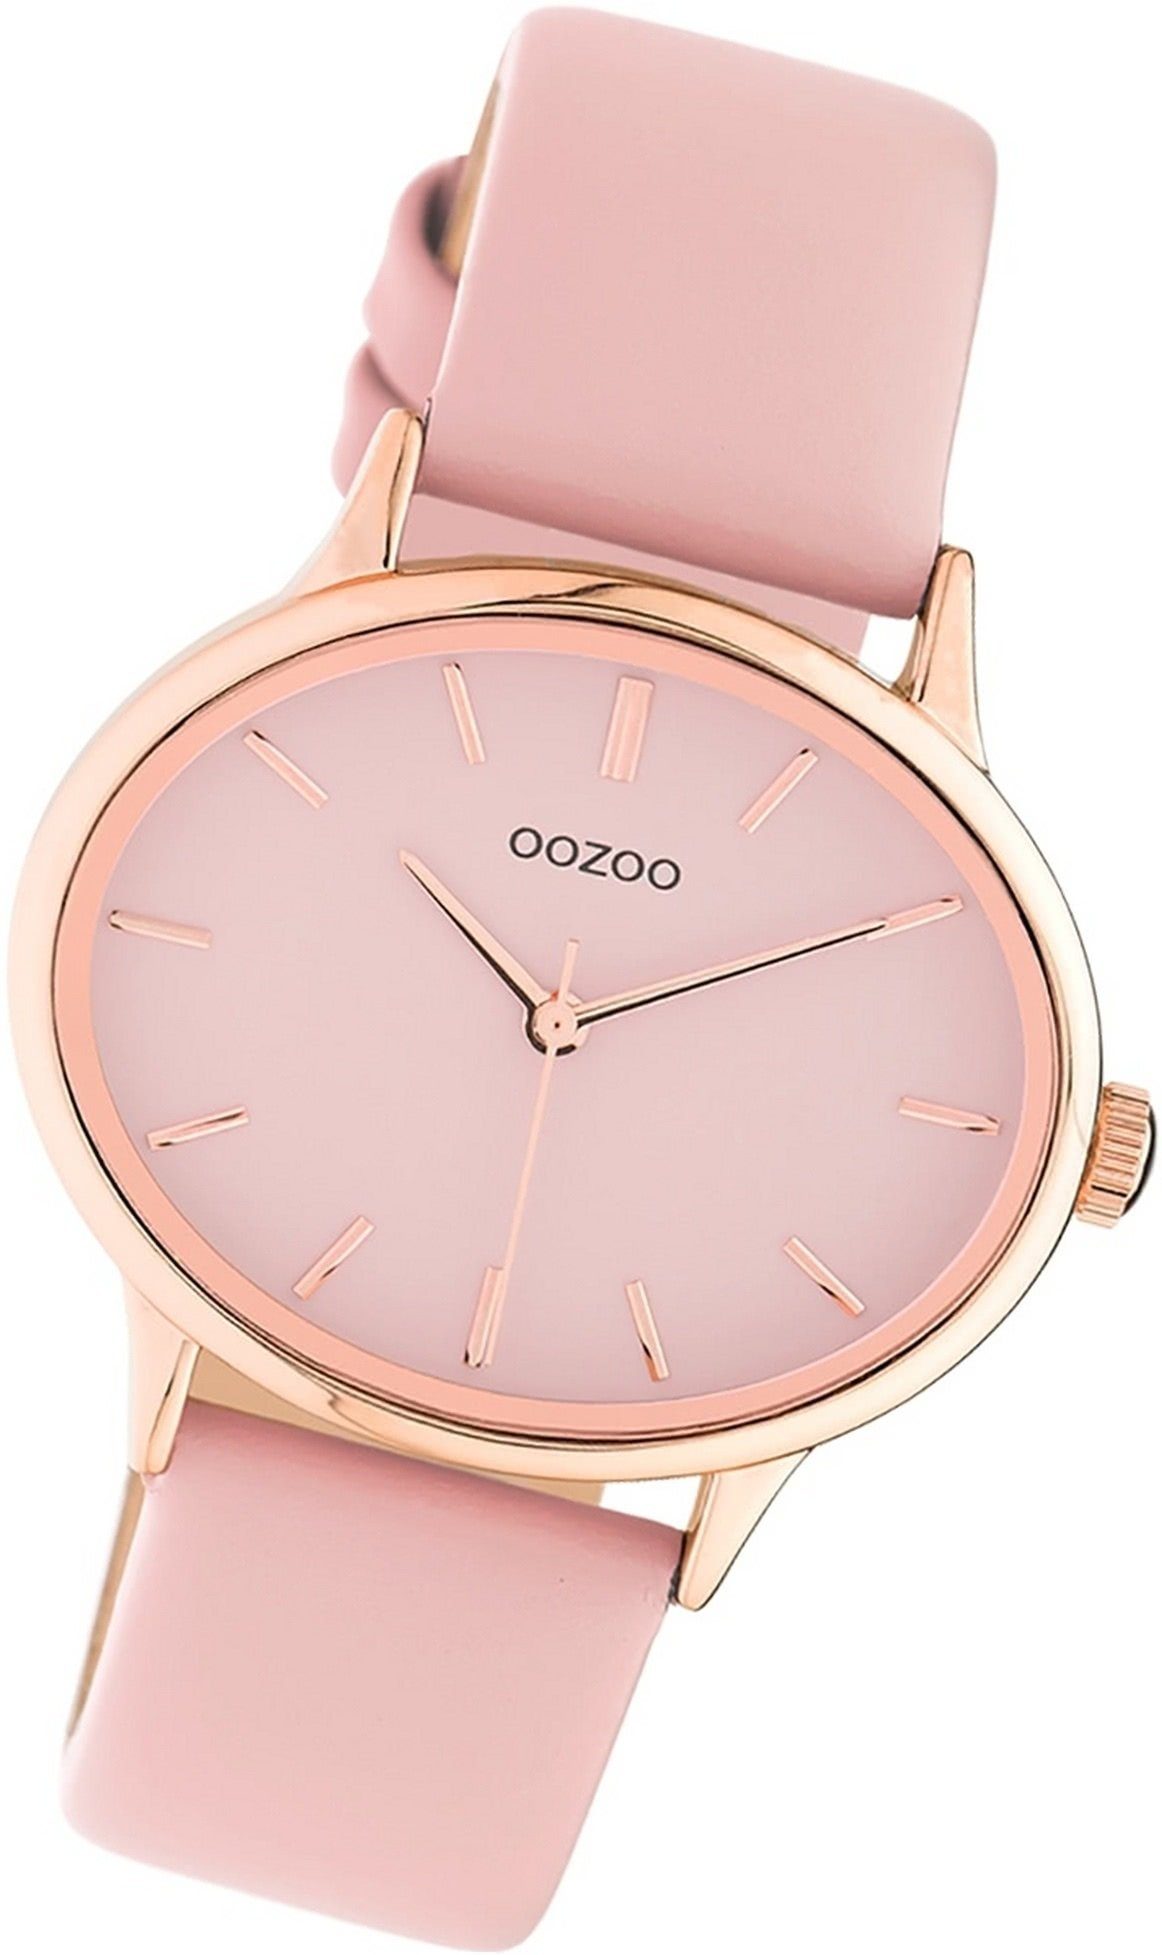 OOZOO Quarzuhr Oozoo Leder Damen Uhr C10941 Analog, Damenuhr Lederarmband  rosa, rundes Gehäuse, extra groß (ca. 38x31mm)